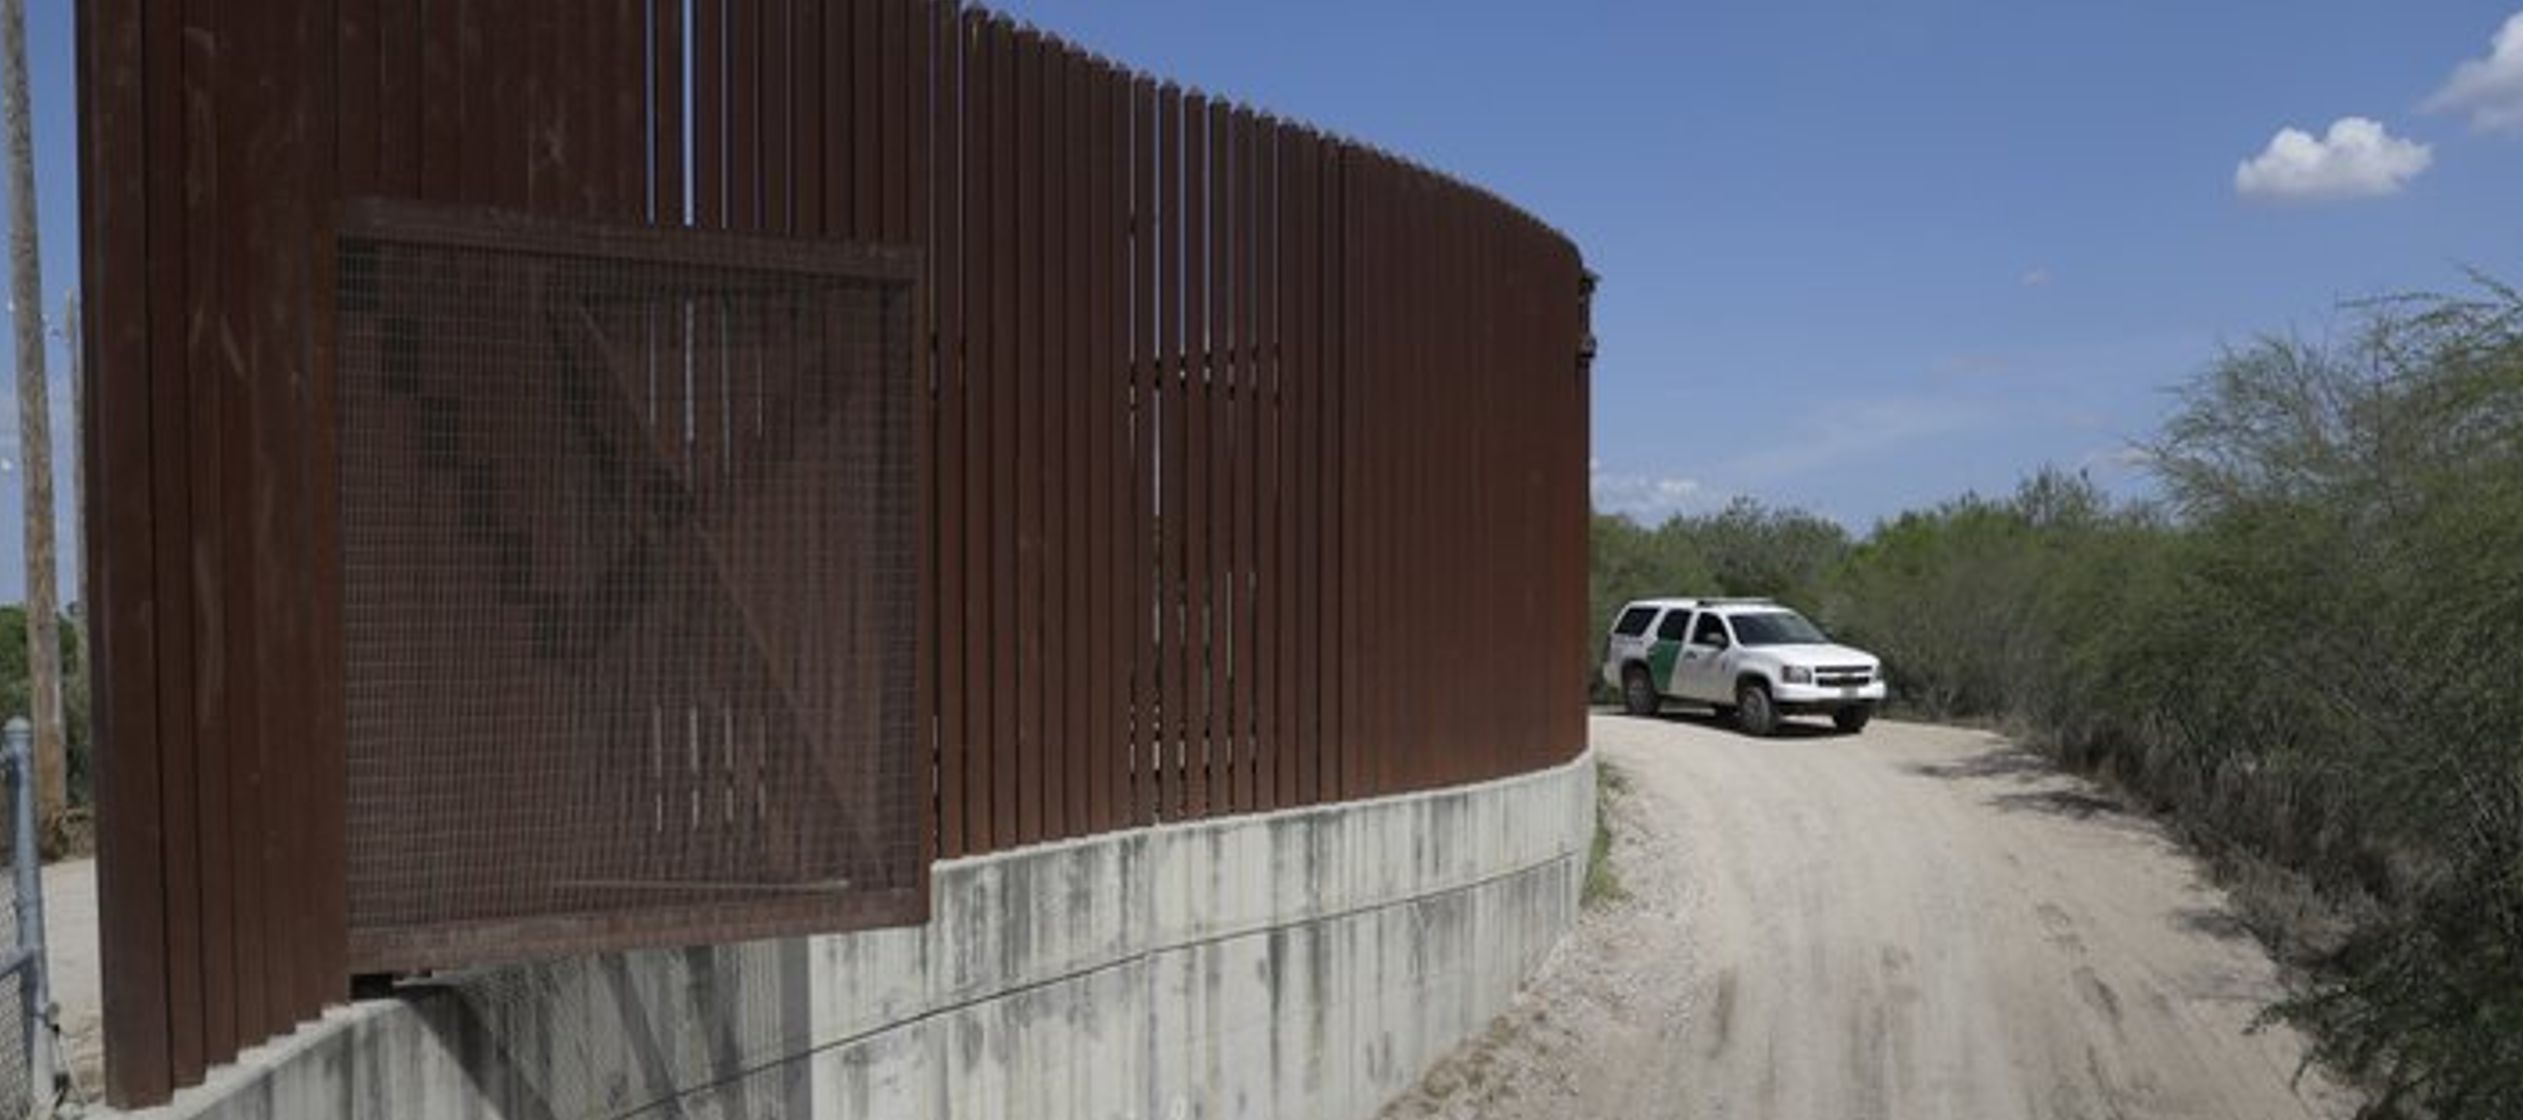 El valle es punto de tránsito de muchos inmigrantes que entran ilegalmente en el...